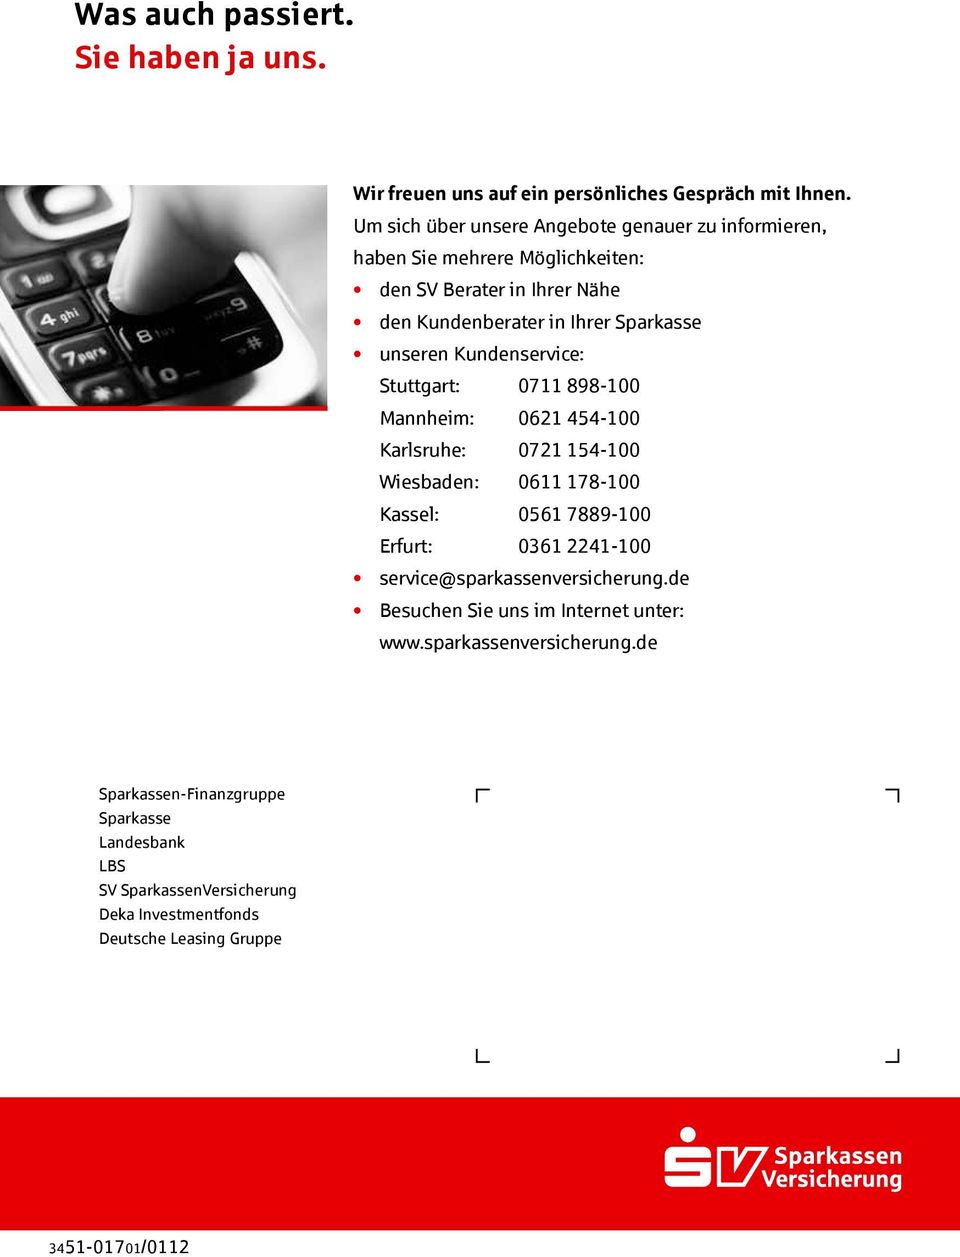 Kundenservice: Stuttgart: 0711 898-100 Mannheim: 0621 454-100 Karlsruhe: 0721 154-100 Wiesbaden: 0611 178-100 Kassel: 0561 7889-100 Erfurt: 0361 2241-100